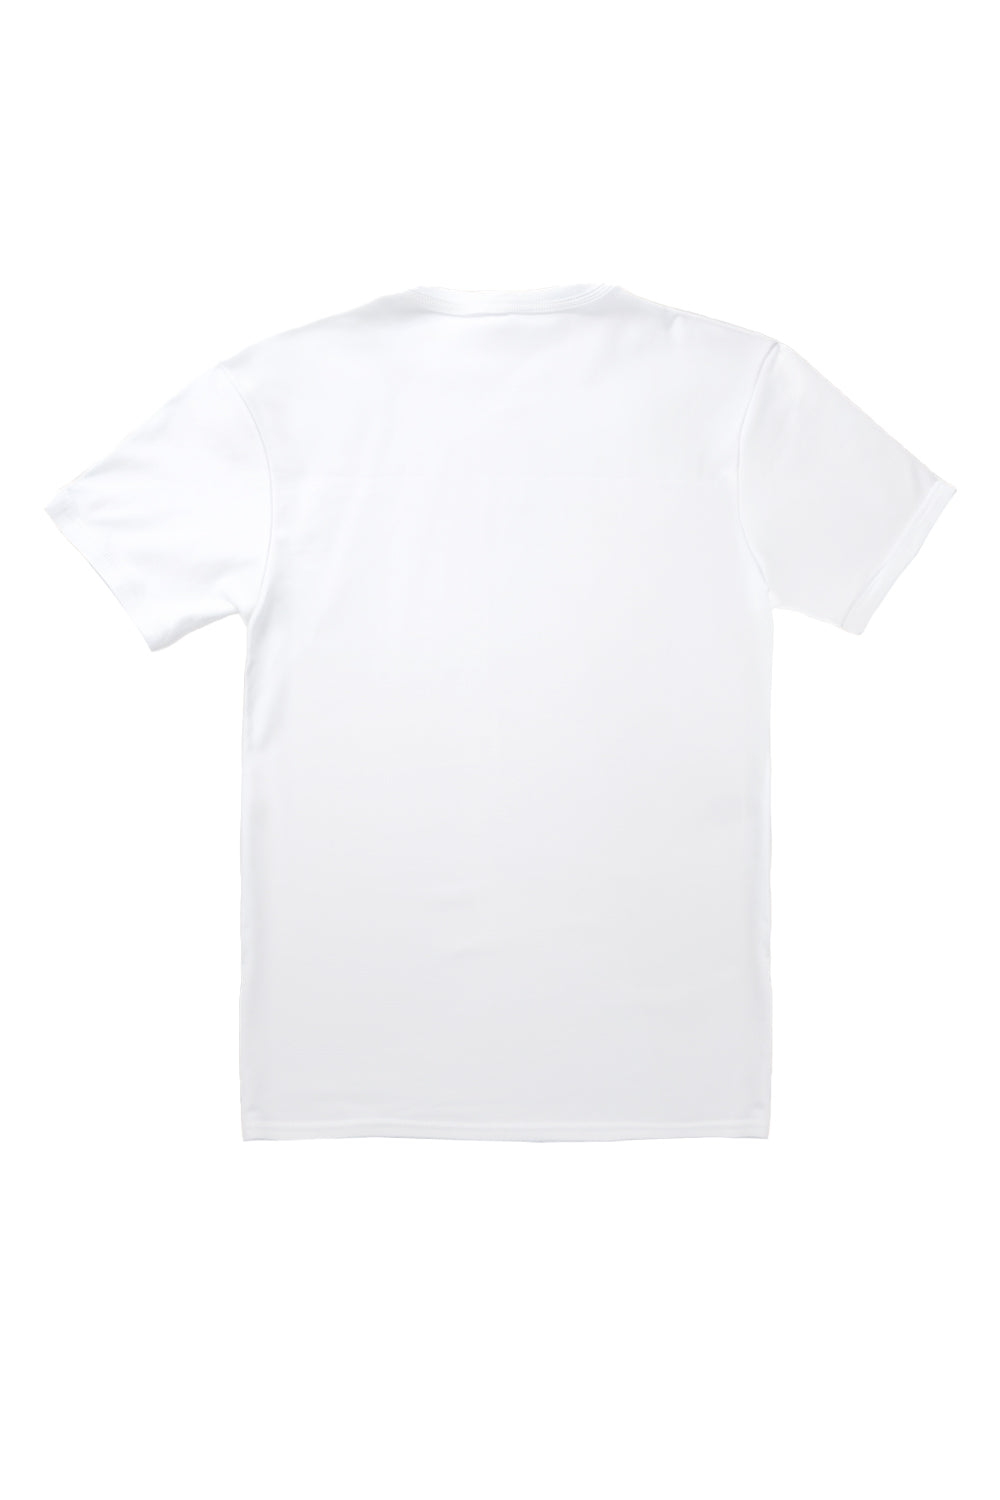 Heart of Bow's T-Shirt in White(Custom Packs)